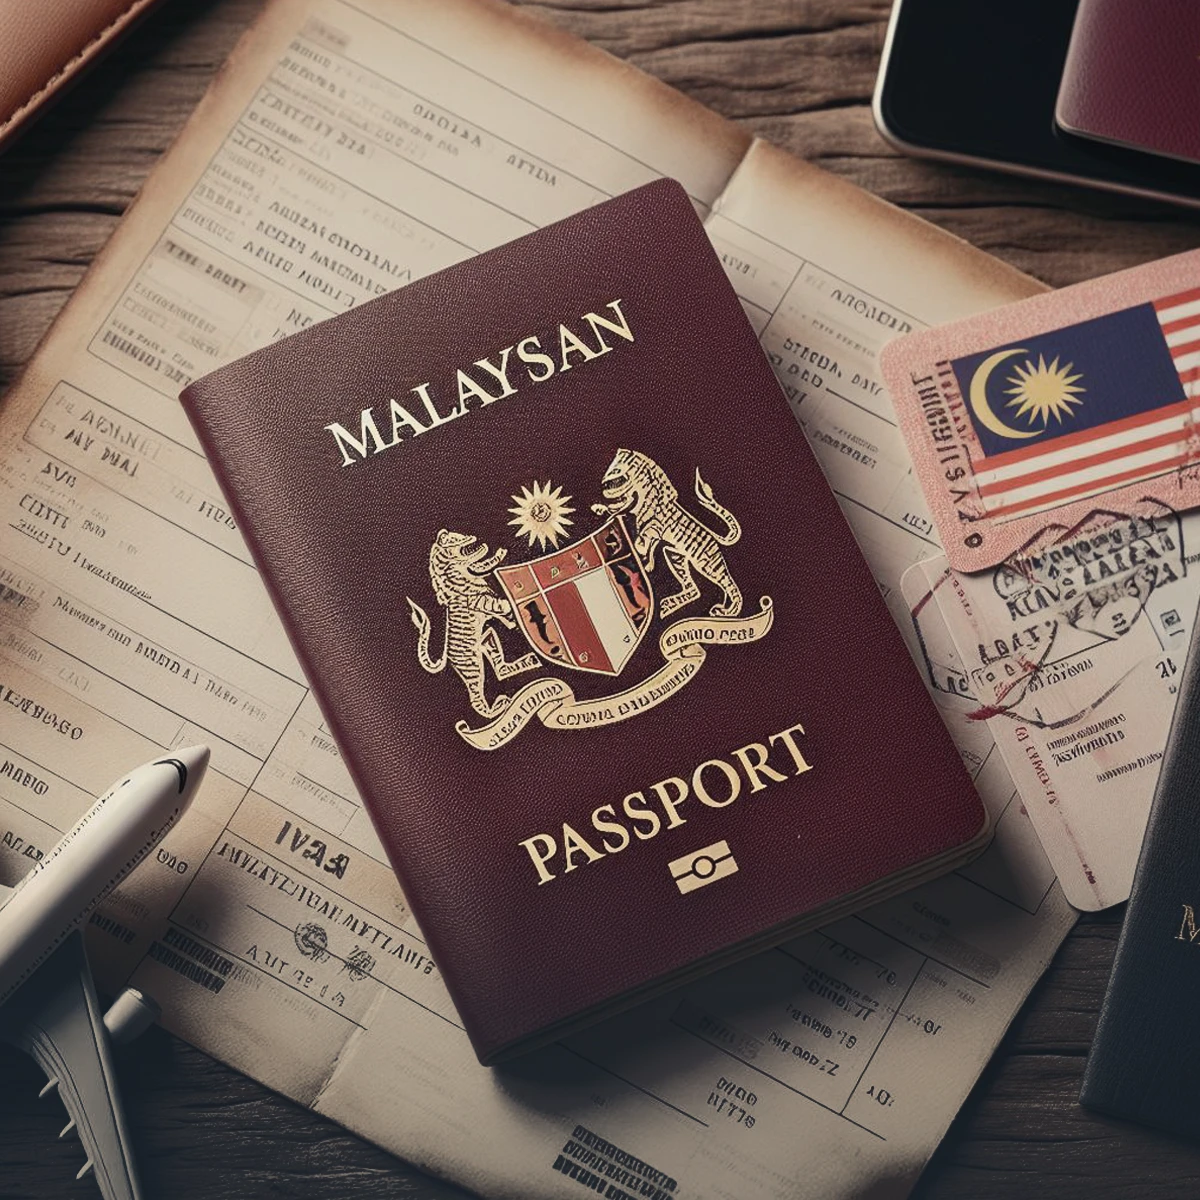 مهاجرت به مالزی